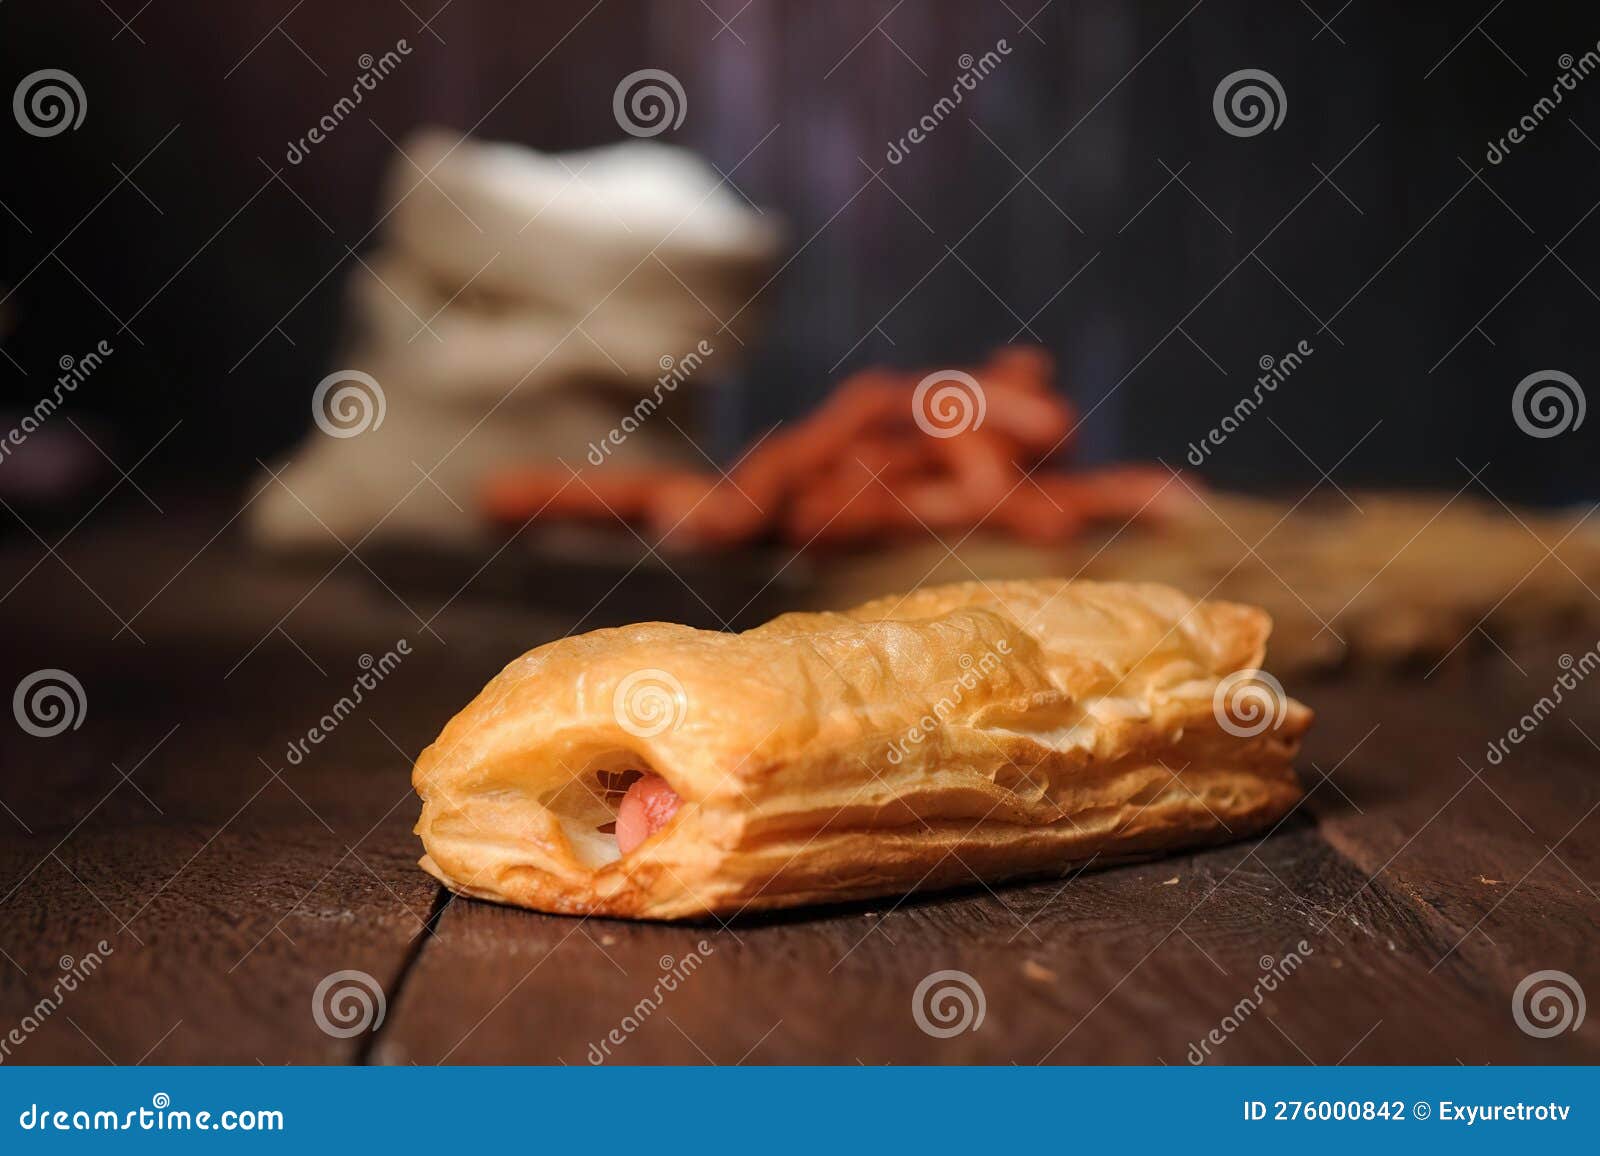 λουκάνικα χοτ-ντογκ ψημένα σε ξύλινη επιφάνεια. προϊόν αρτοποιίας. φωτογραφία εστιατορίου